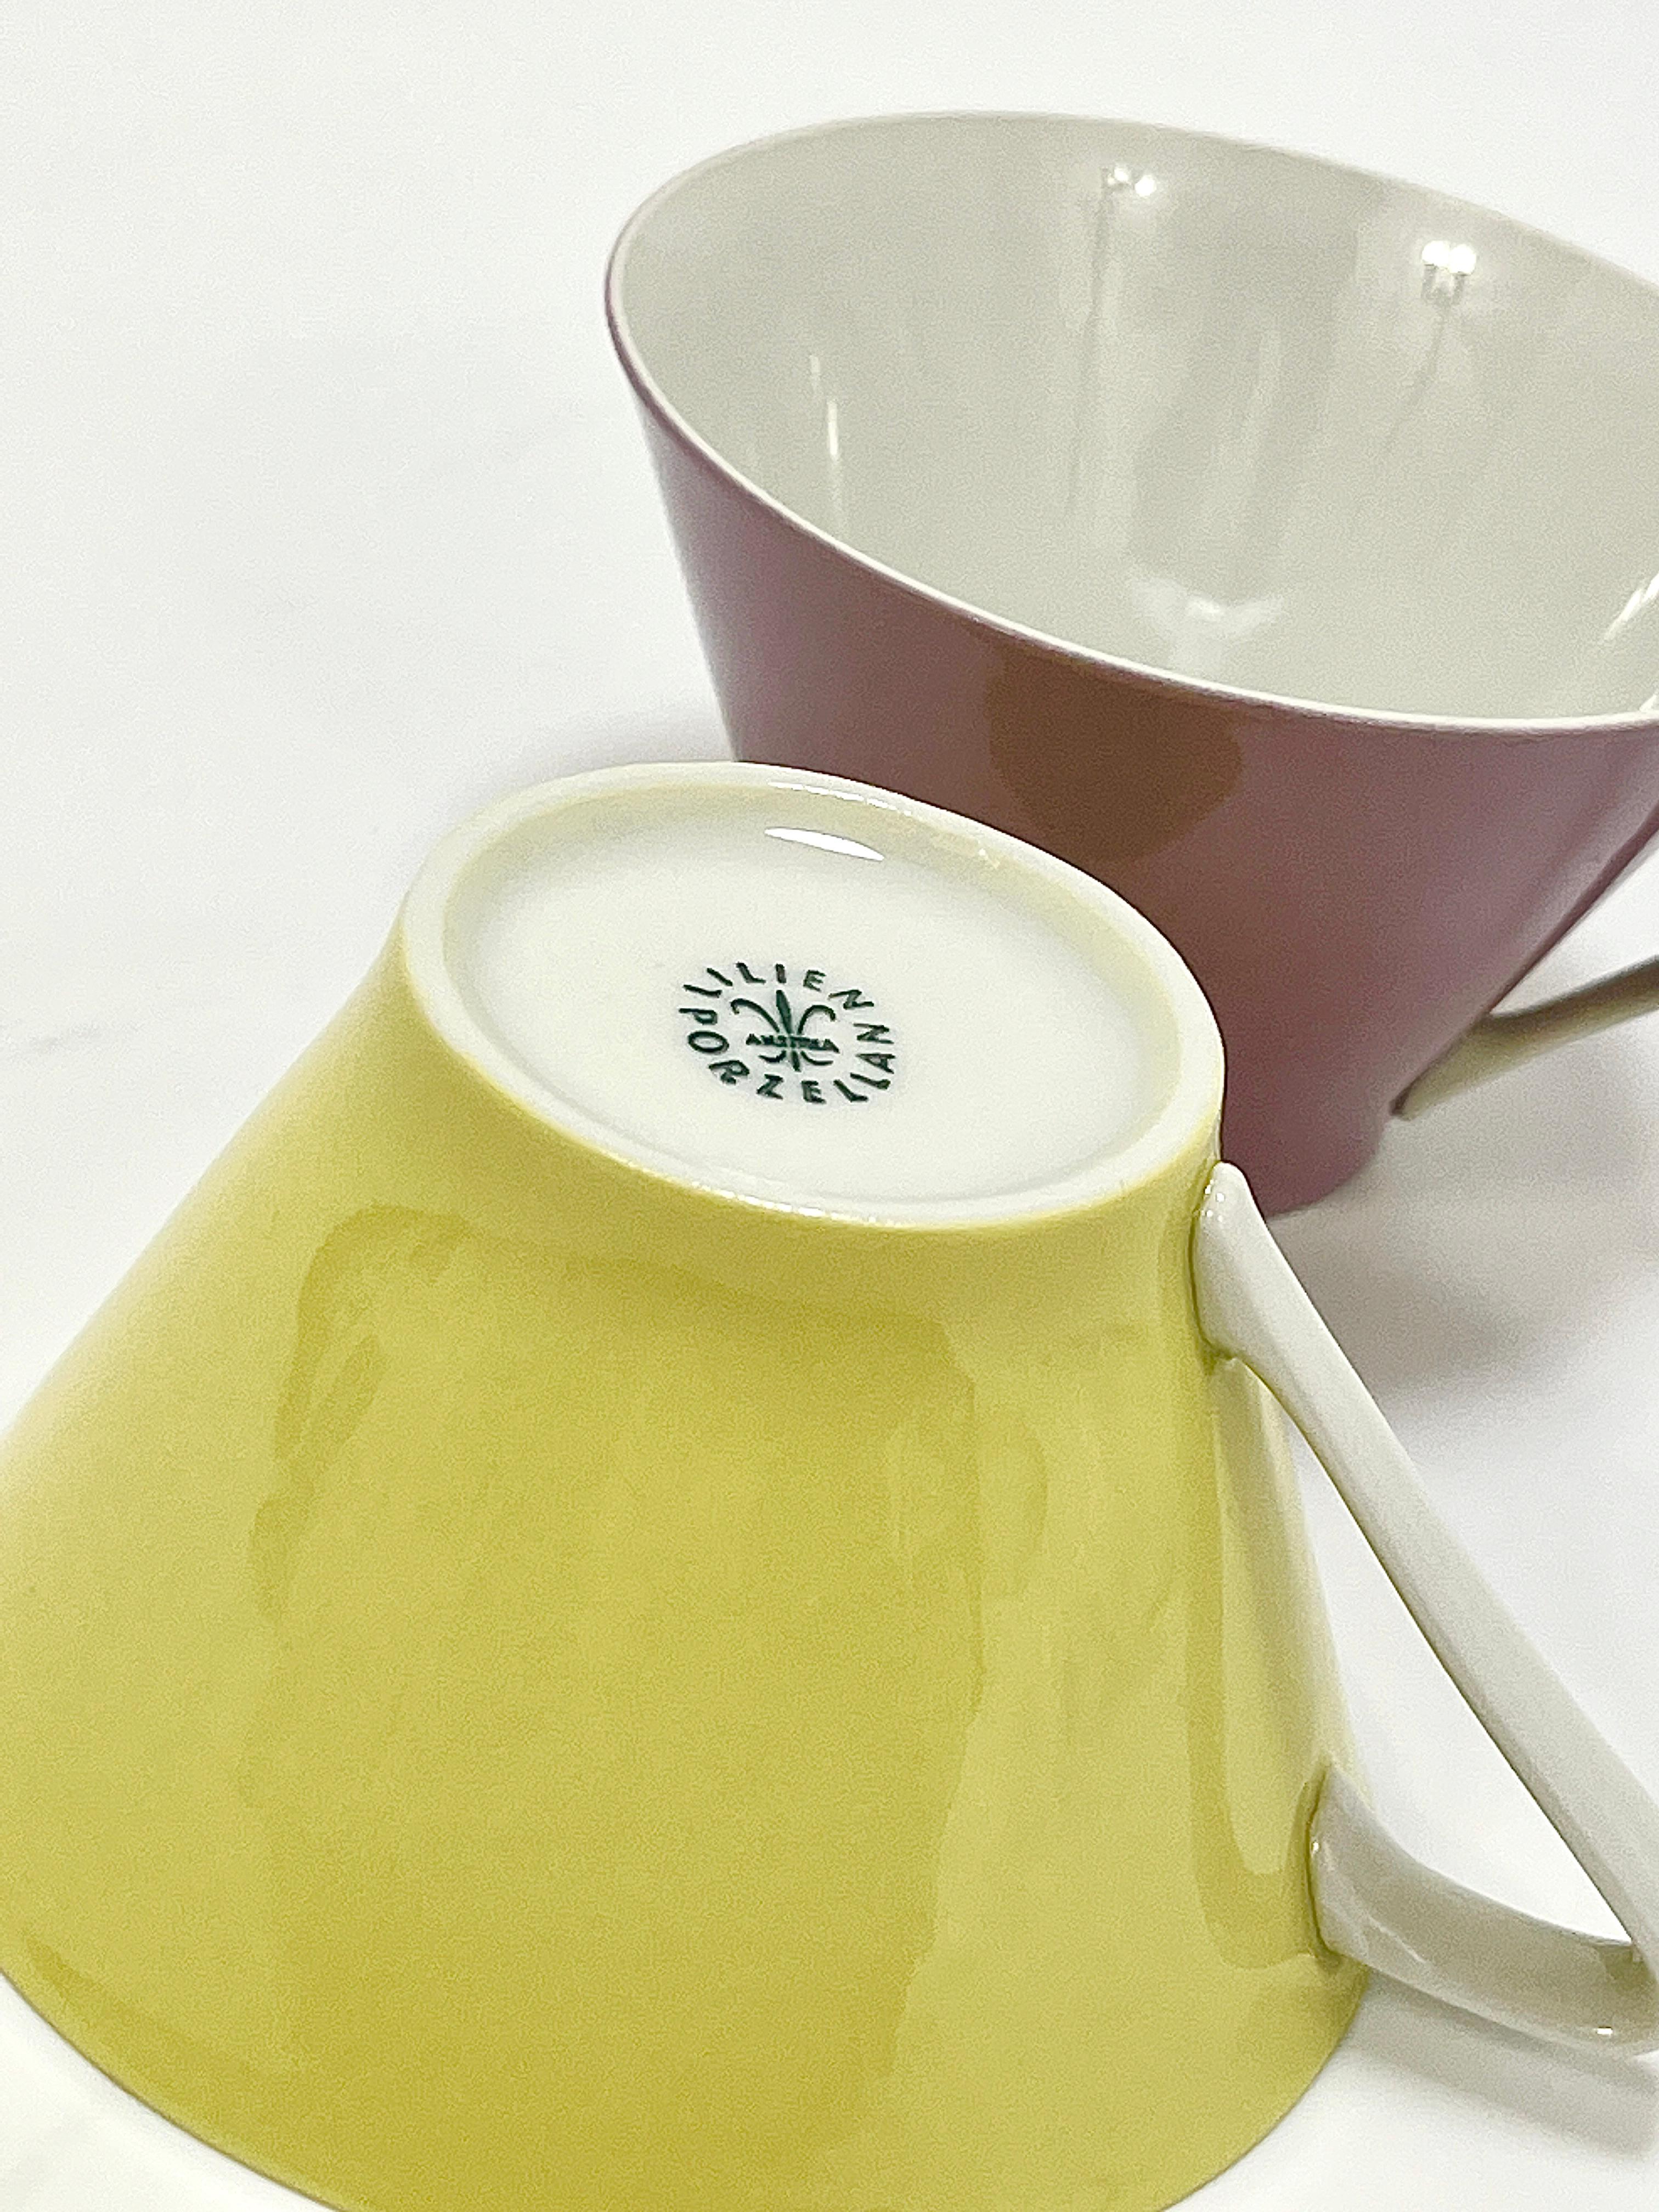 6 Midcentury Pastel Daisy Porcelain Coffee Cups, Lilien, Austria, 1950s For Sale 9